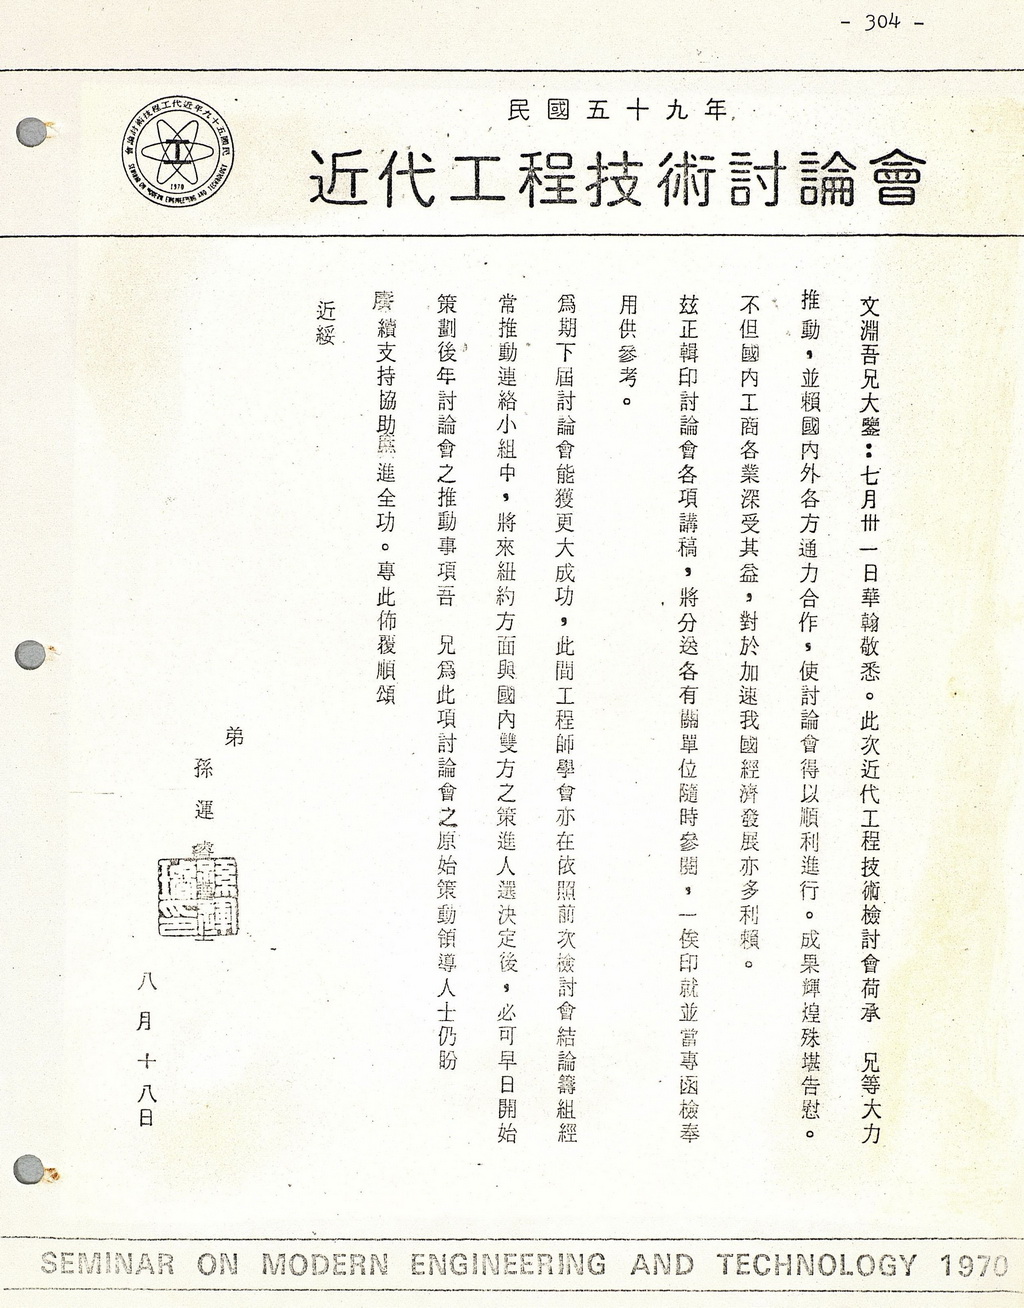 孫運璿寫給潘文淵的信：感謝潘博士等人對1970近代工程技術討論會的大力推動